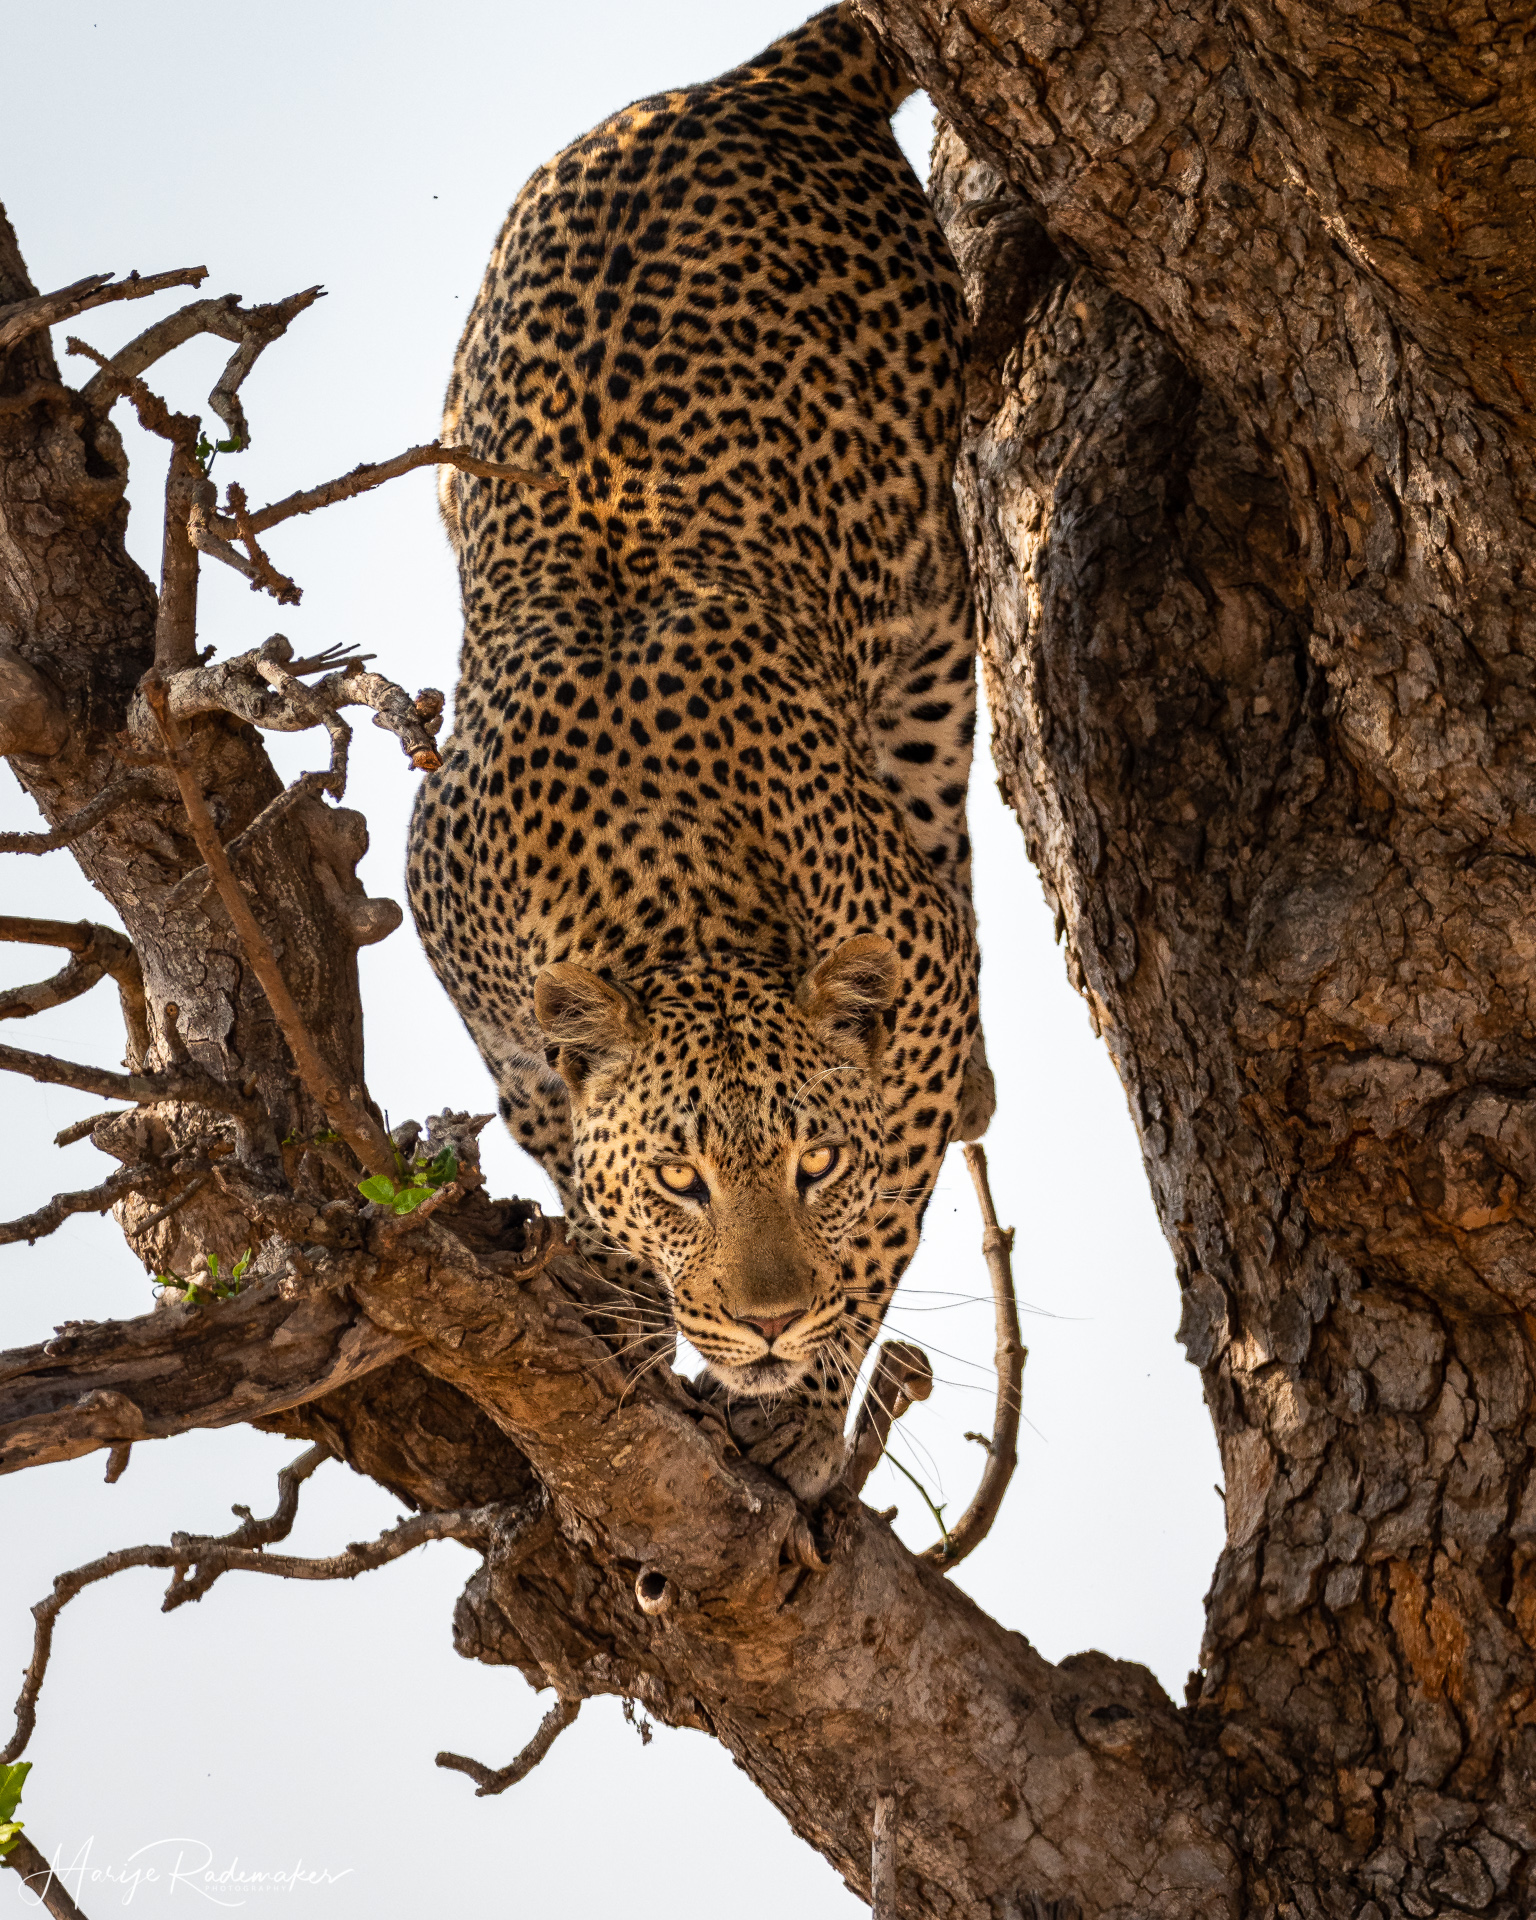 Captured at Kruger NP on 05 Oct, 2019 by Marije Rademaker